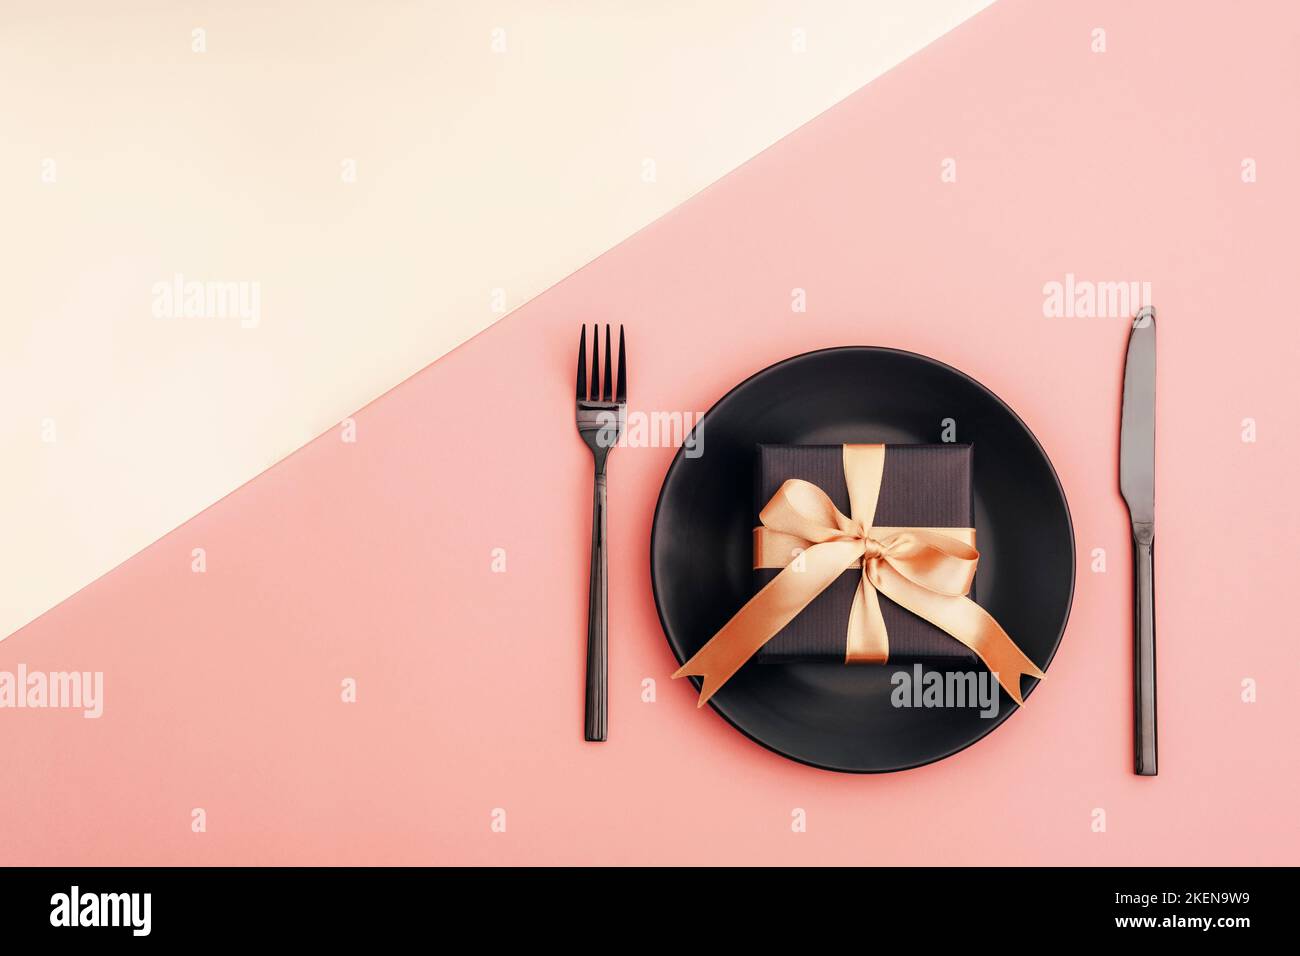 Table élégante, boîte cadeau, assiette noire, couverts sur fond rose et doré. Concept de vacances. Vue de dessus, plan d'appartement. Banque D'Images